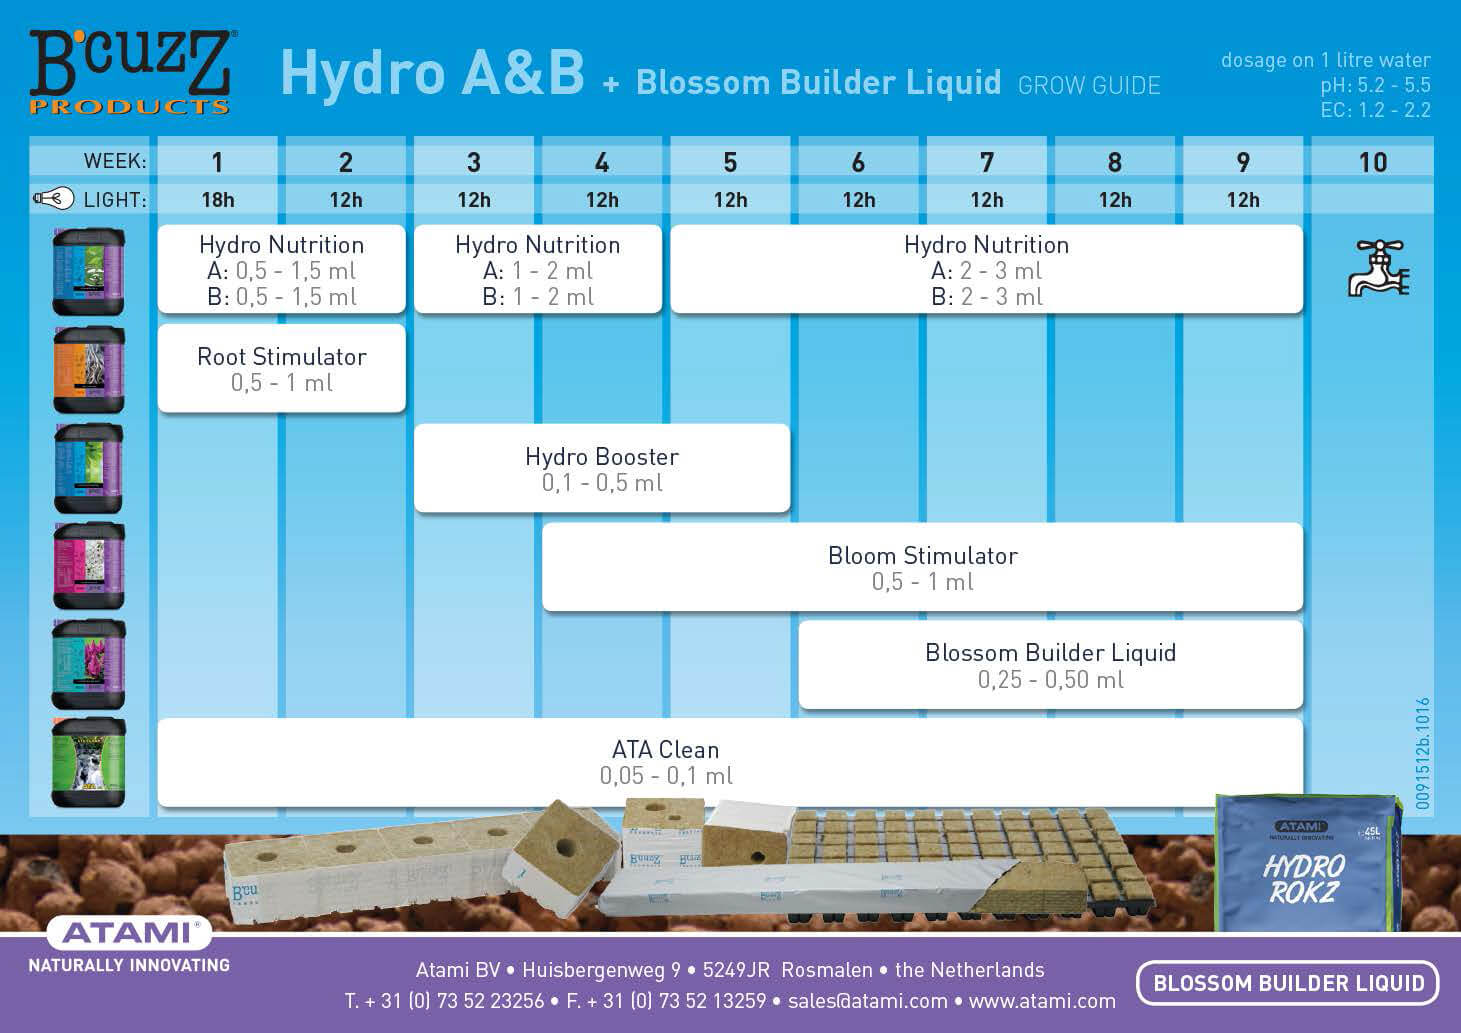 bcuzz-hydro-a-b-blossom-builder-liquid